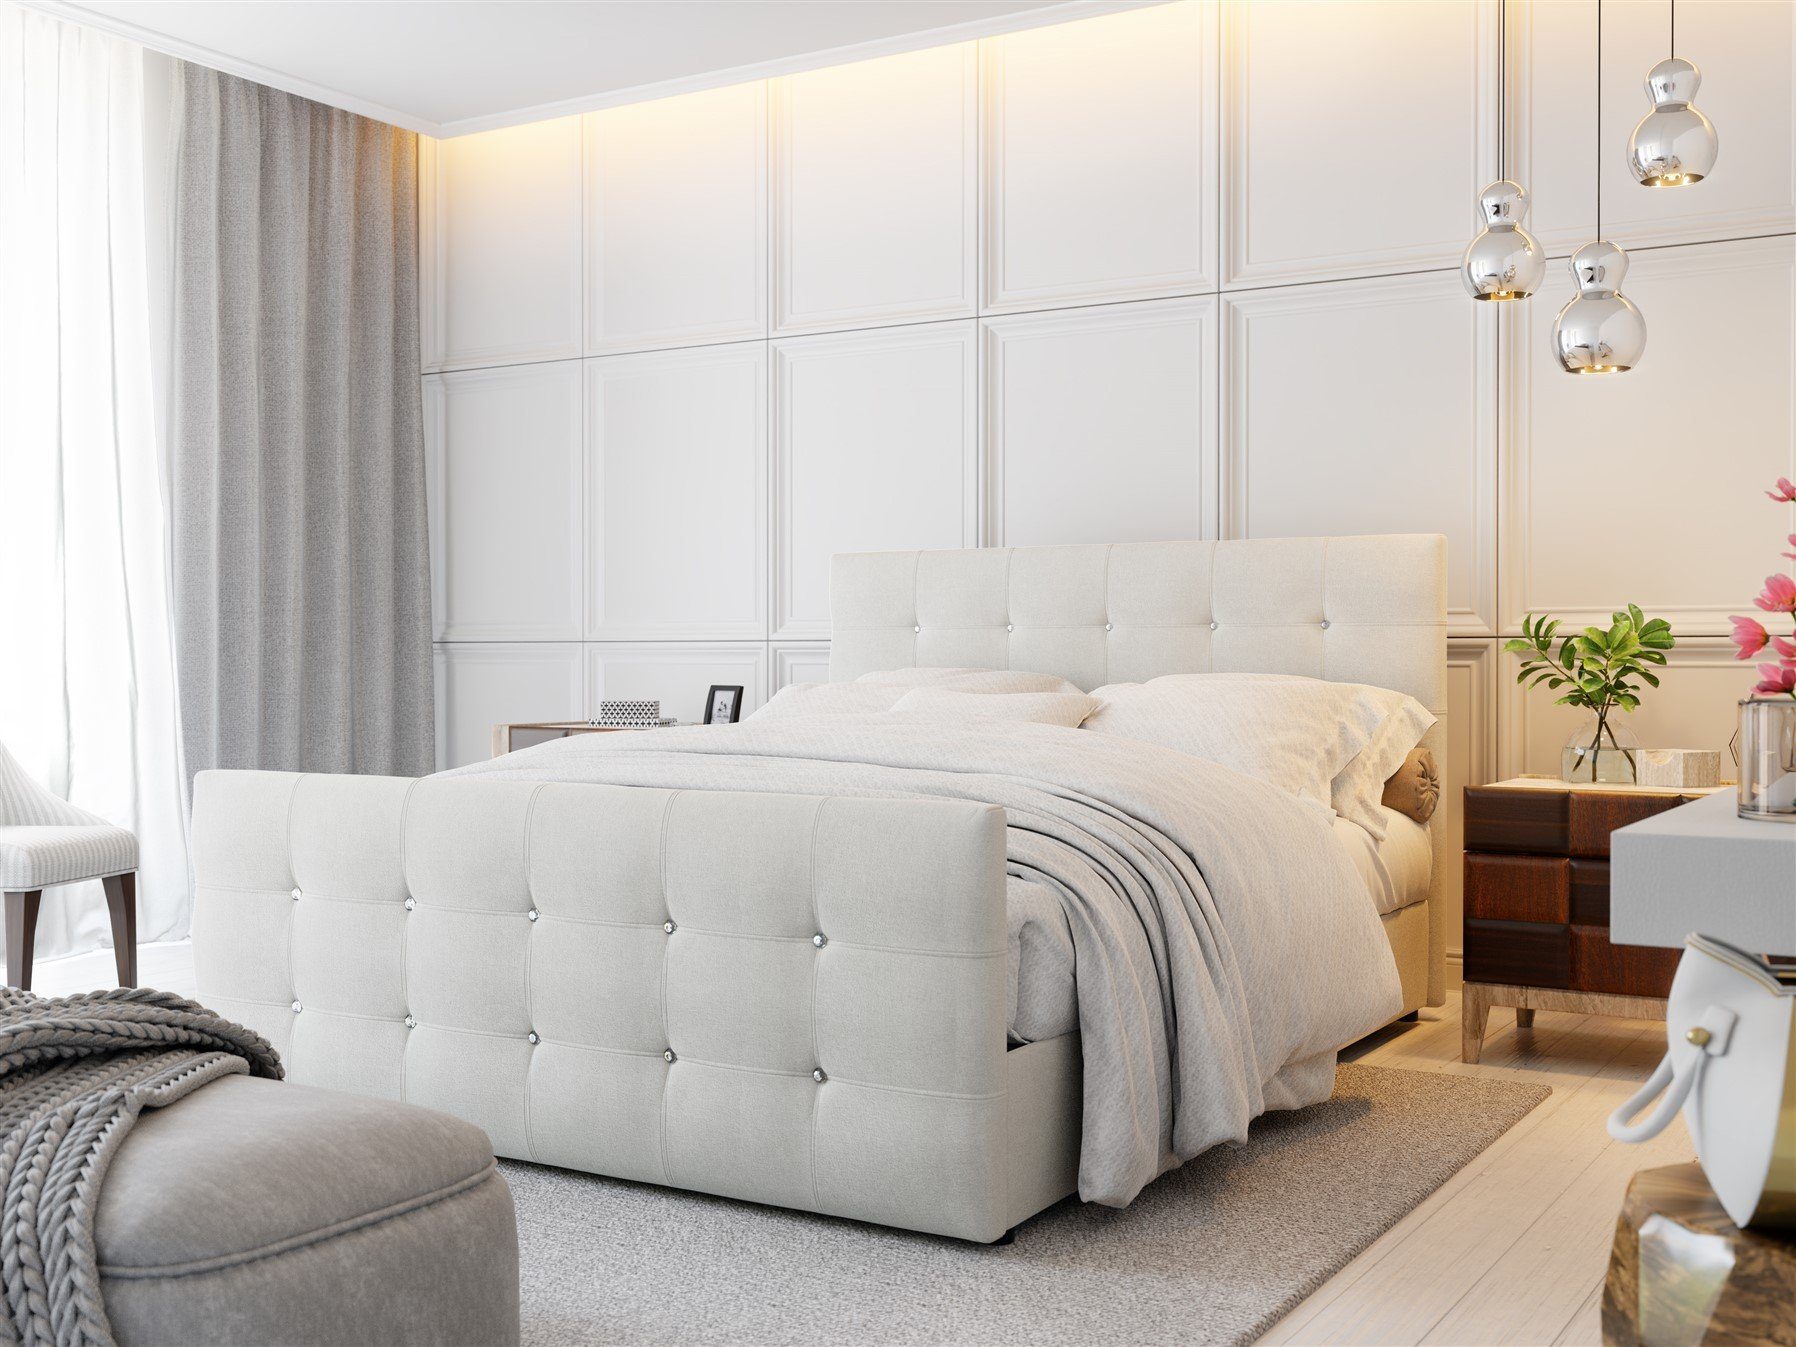 Betten 160x200 online kaufen | OTTO